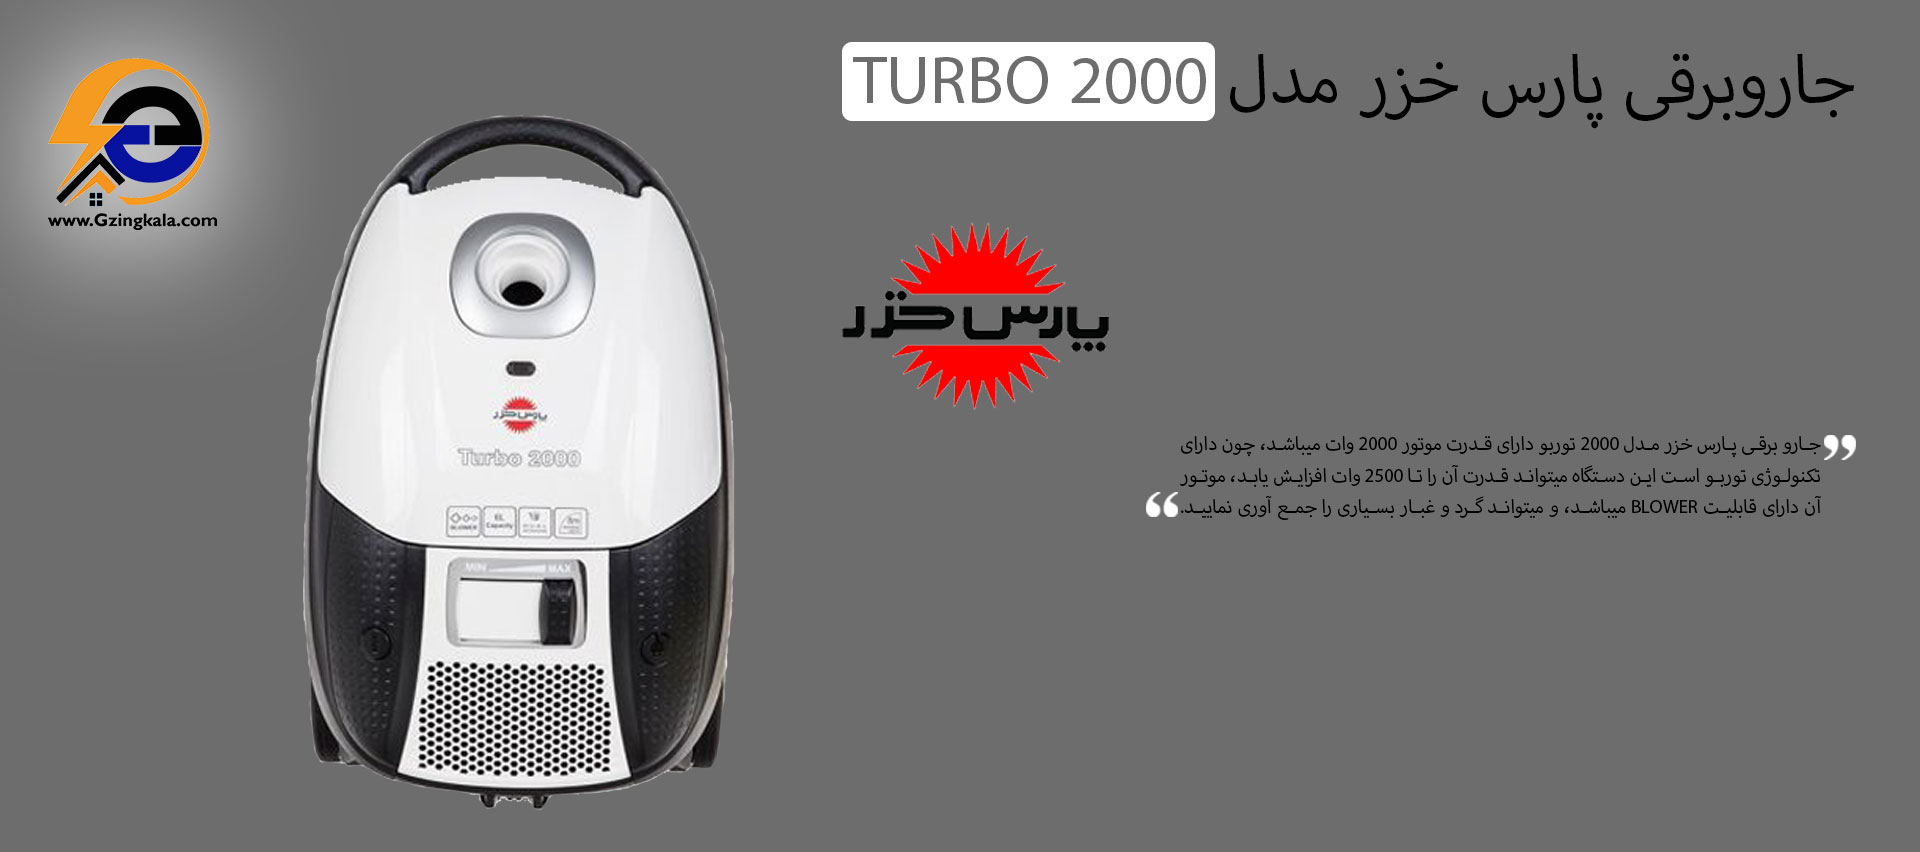 جاروبرقی پارس خزر مدل 2000 TURBO